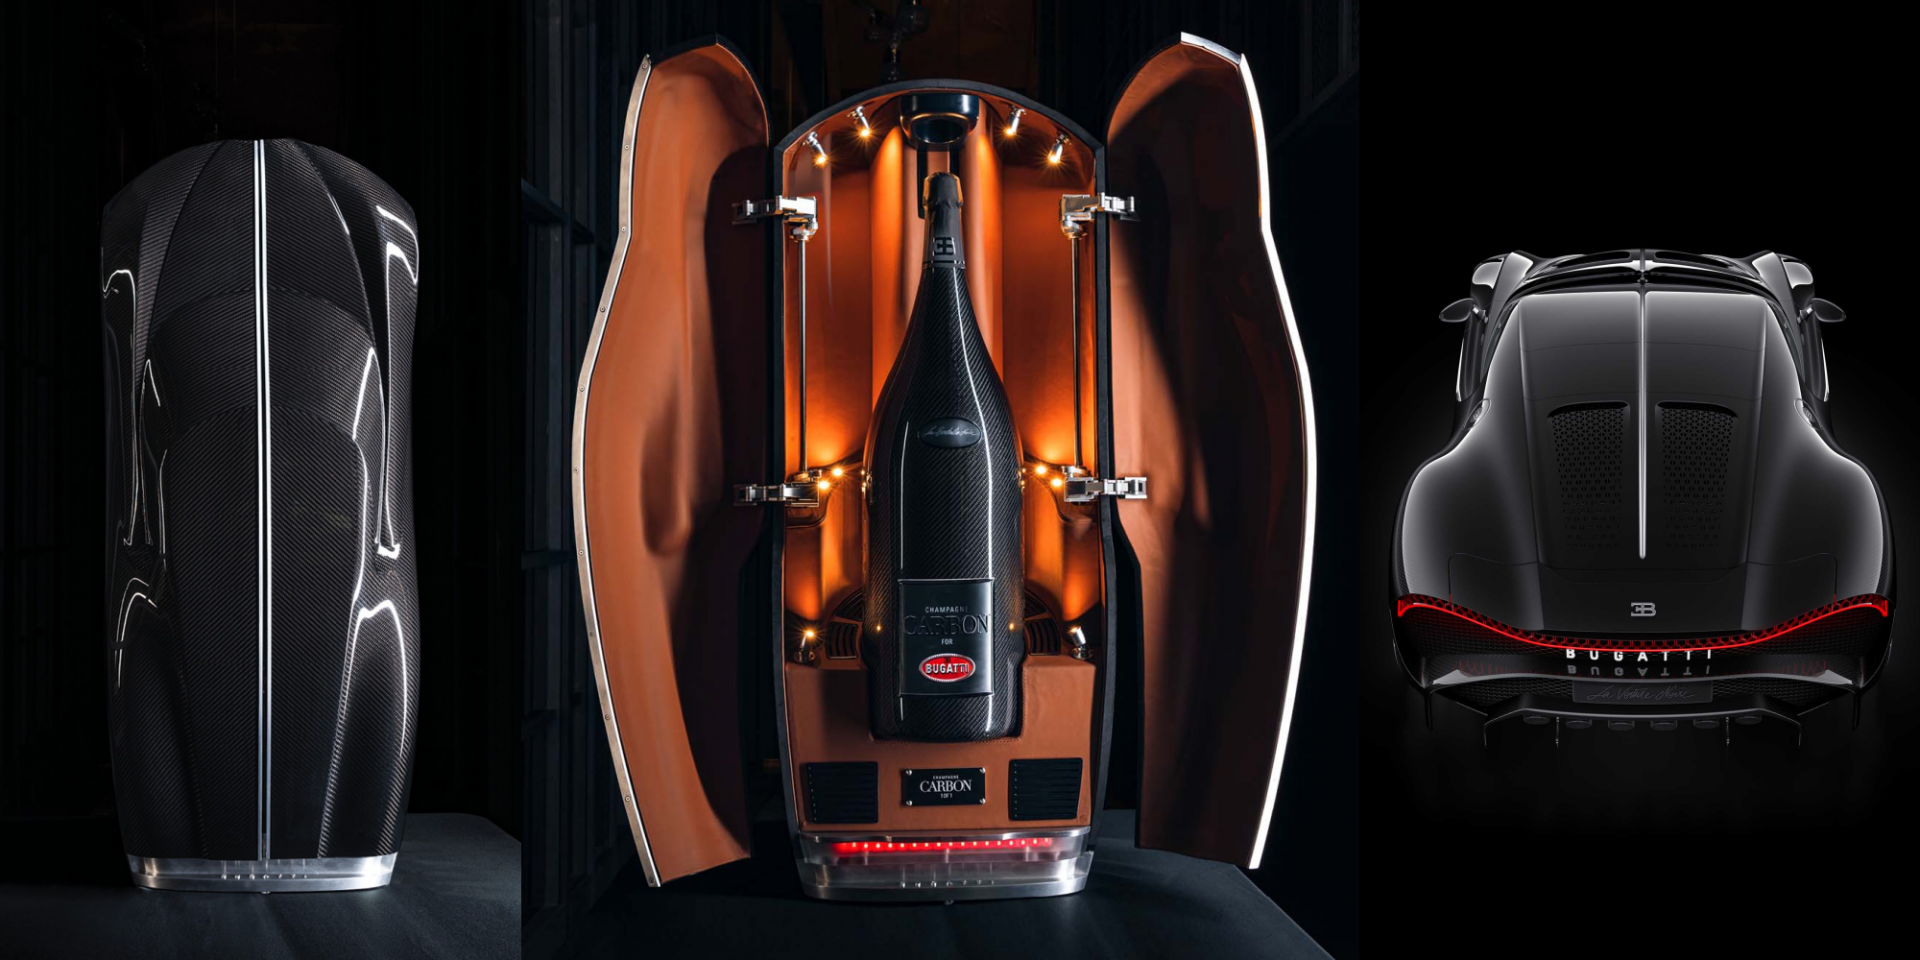 難以想像的交車禮 Bugatti La Voiture Noire隨車附送15公升香檳組